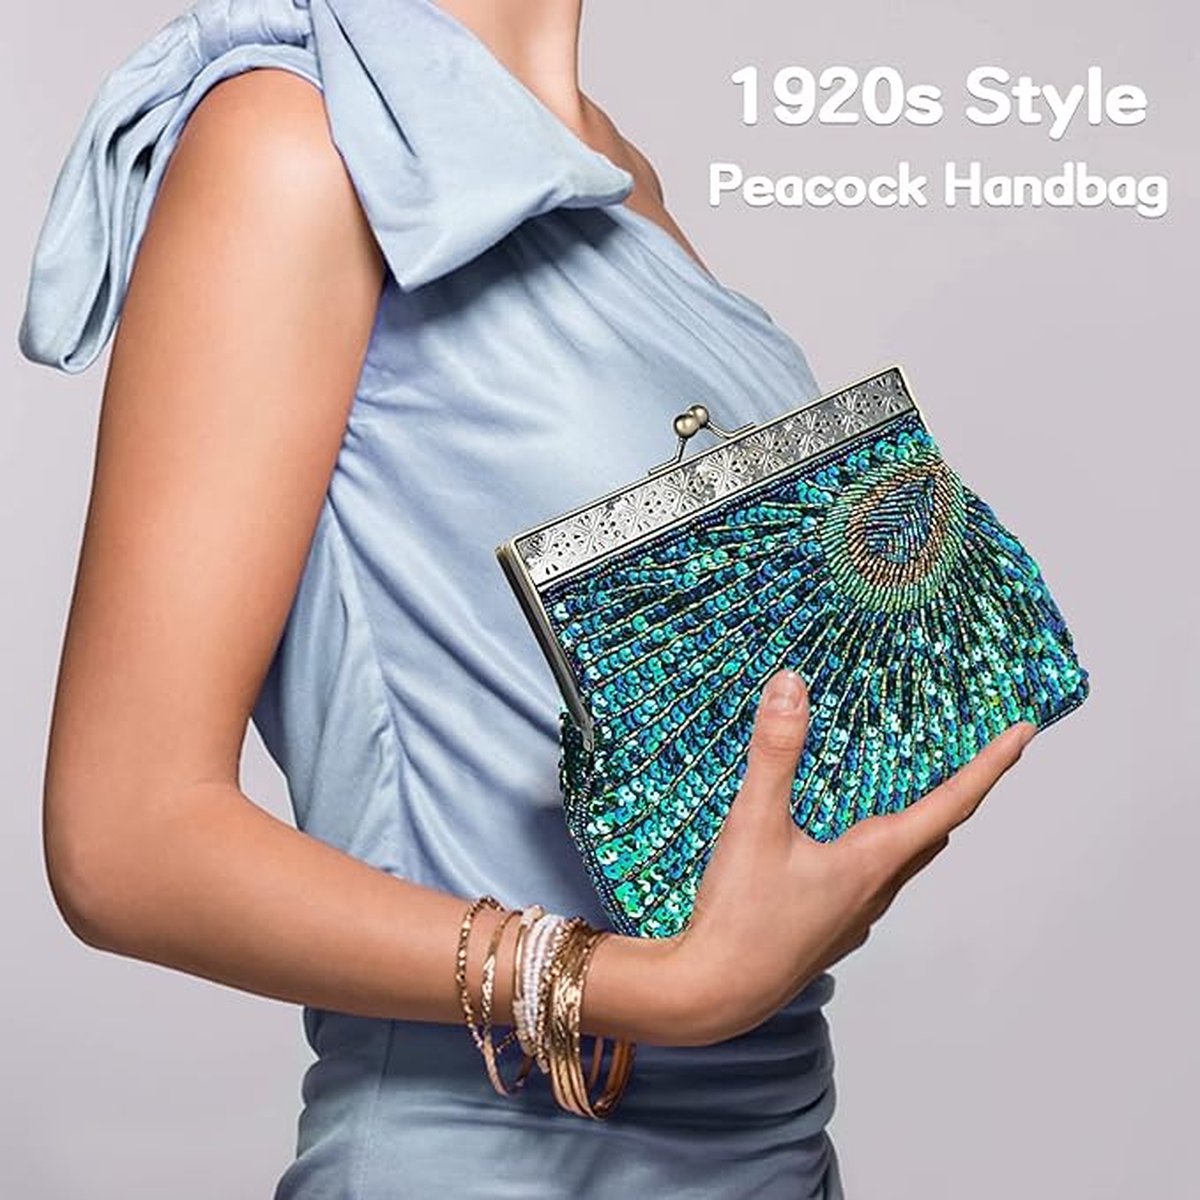 Vintage Pailletten Pauw Clutch Bag, Antieke Kralen Avond Handtas Clutch Bags, Turquoise Eye Catching Purse voor Bruiloft (Blauw)